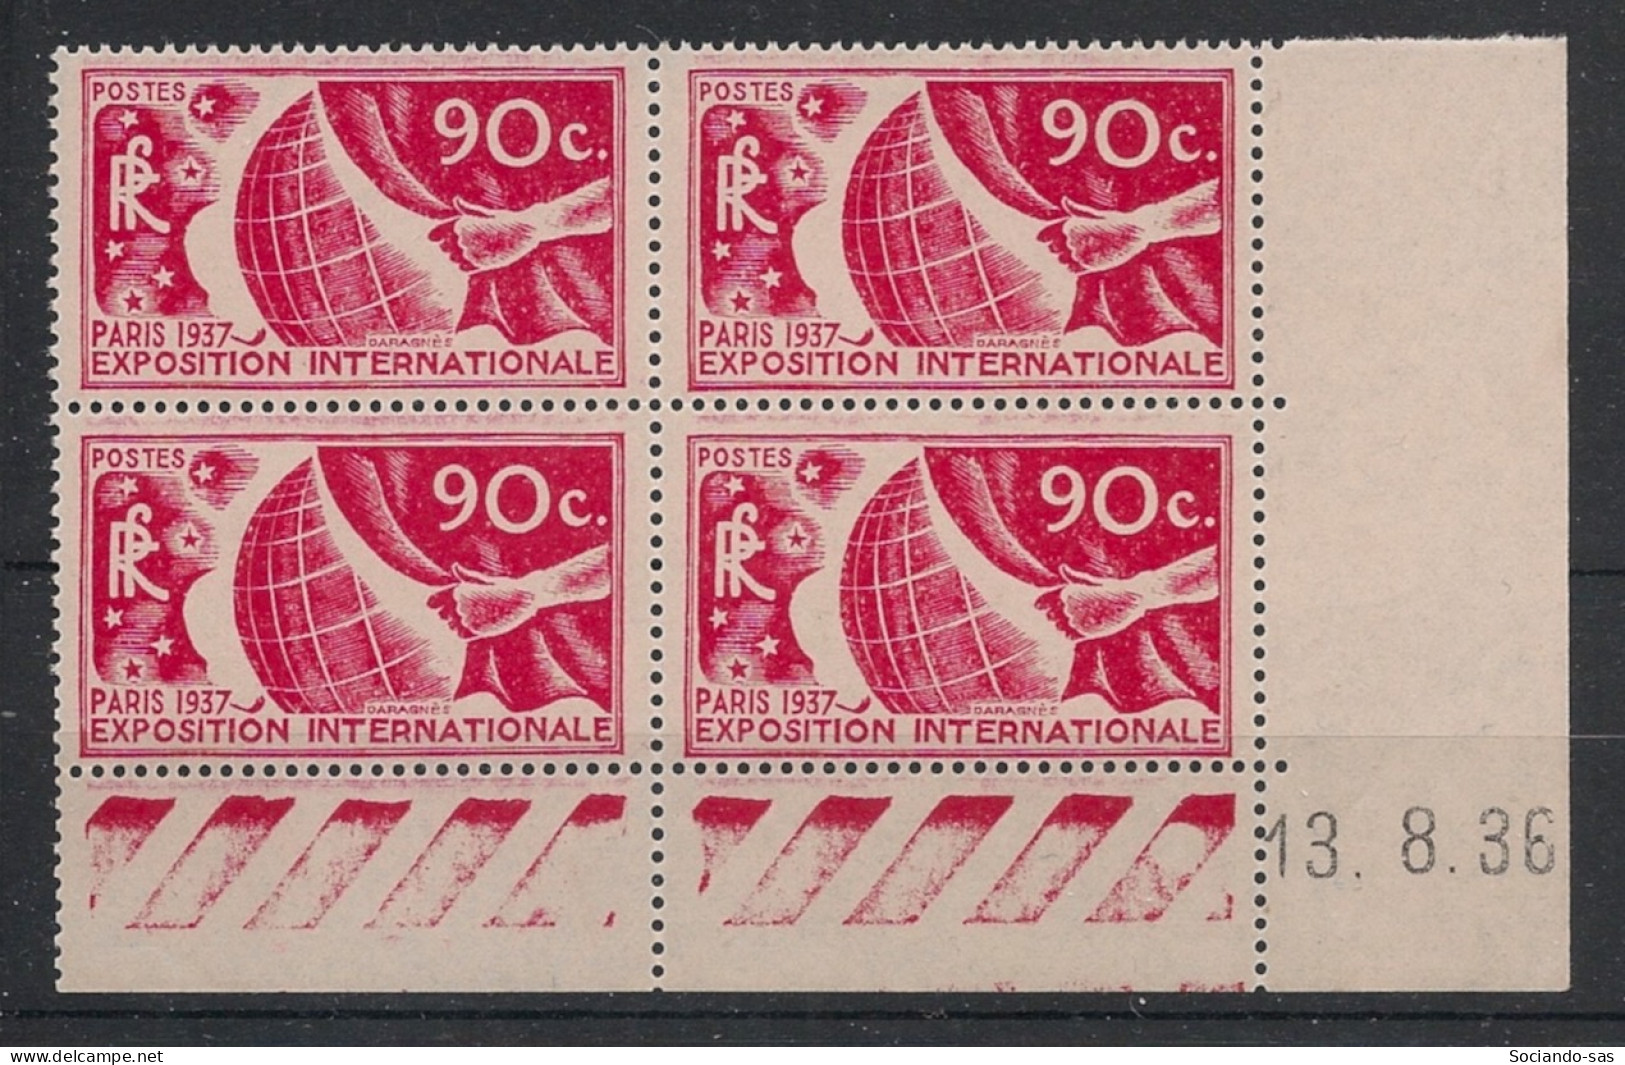 FRANCE - 1936 - N°YT. 326 - Exposition De Paris 90c Rouge - Bloc De 4 Coin Daté - Neuf Luxe** / MNH - 1930-1939